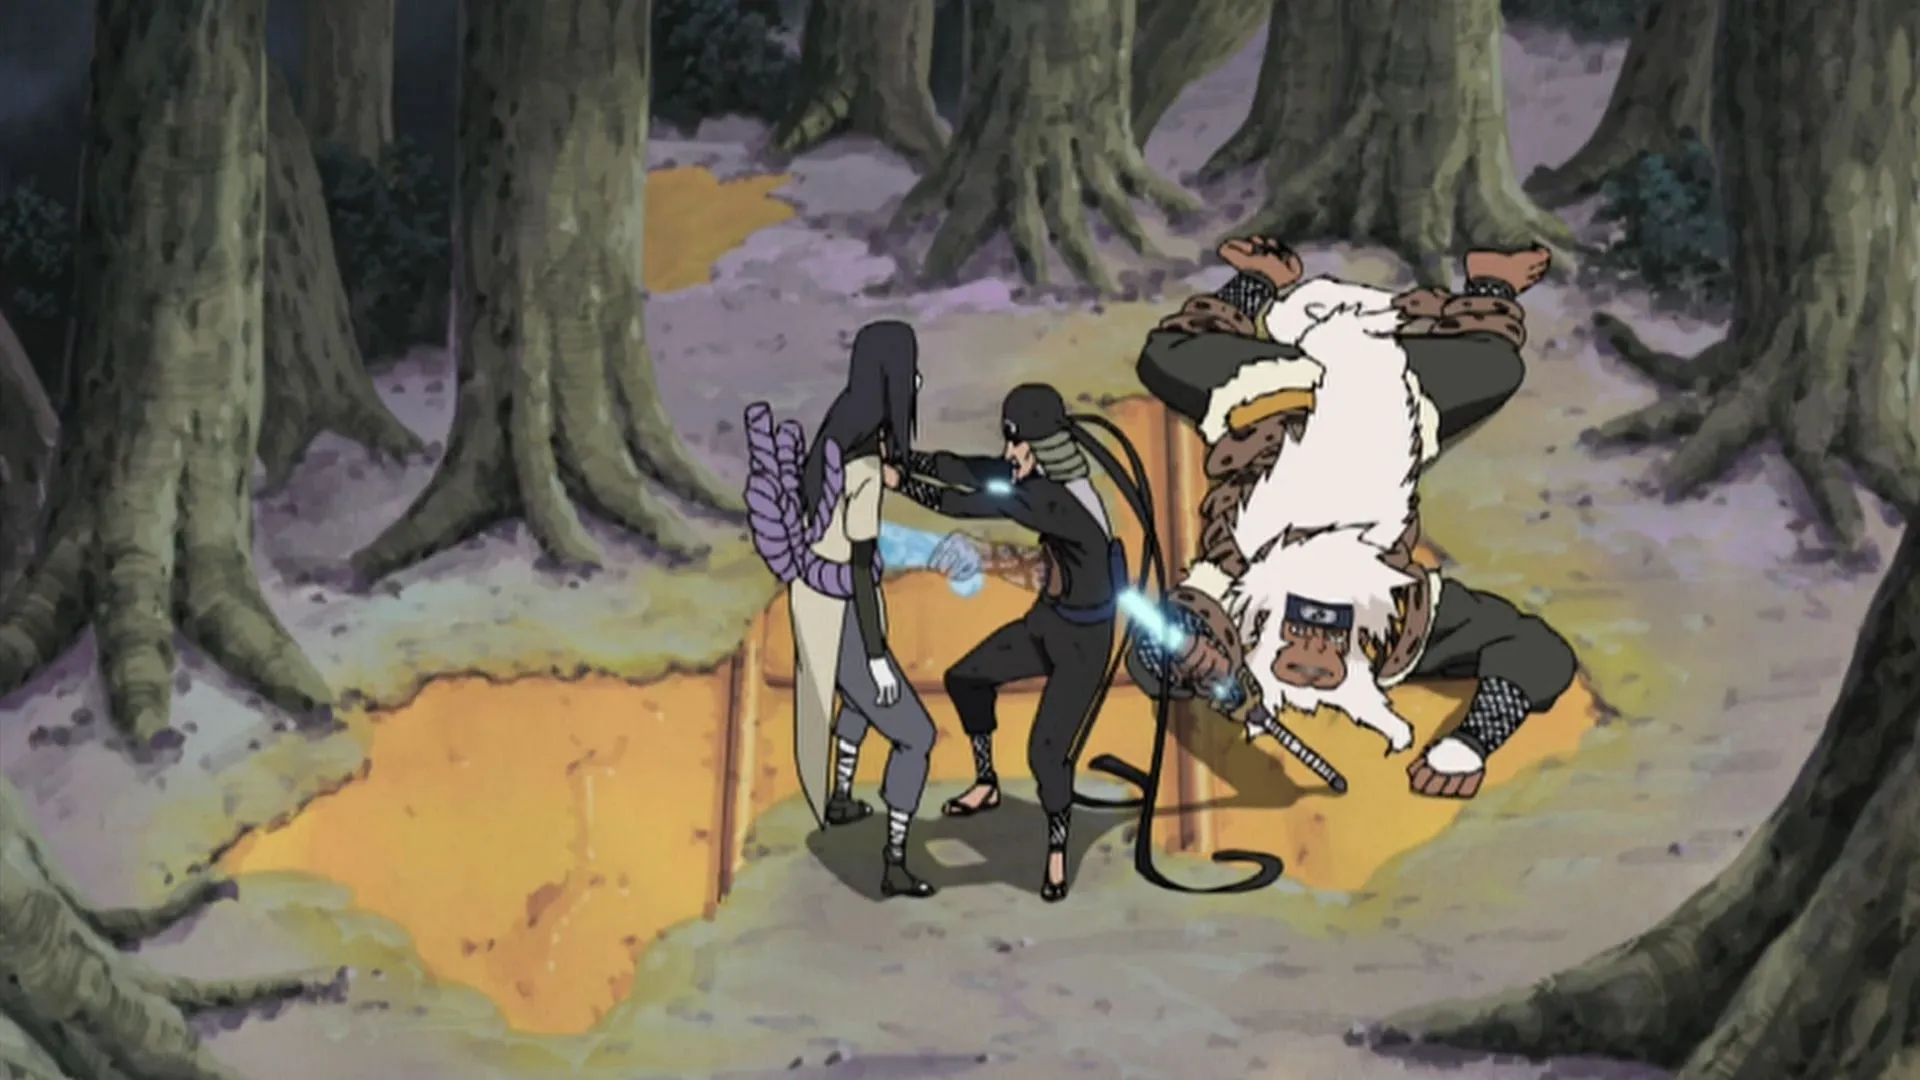 La lotta tra Hiruzen e Orochimaru vista nell'anime Naruto (Immagine tramite Studio Pierrot)